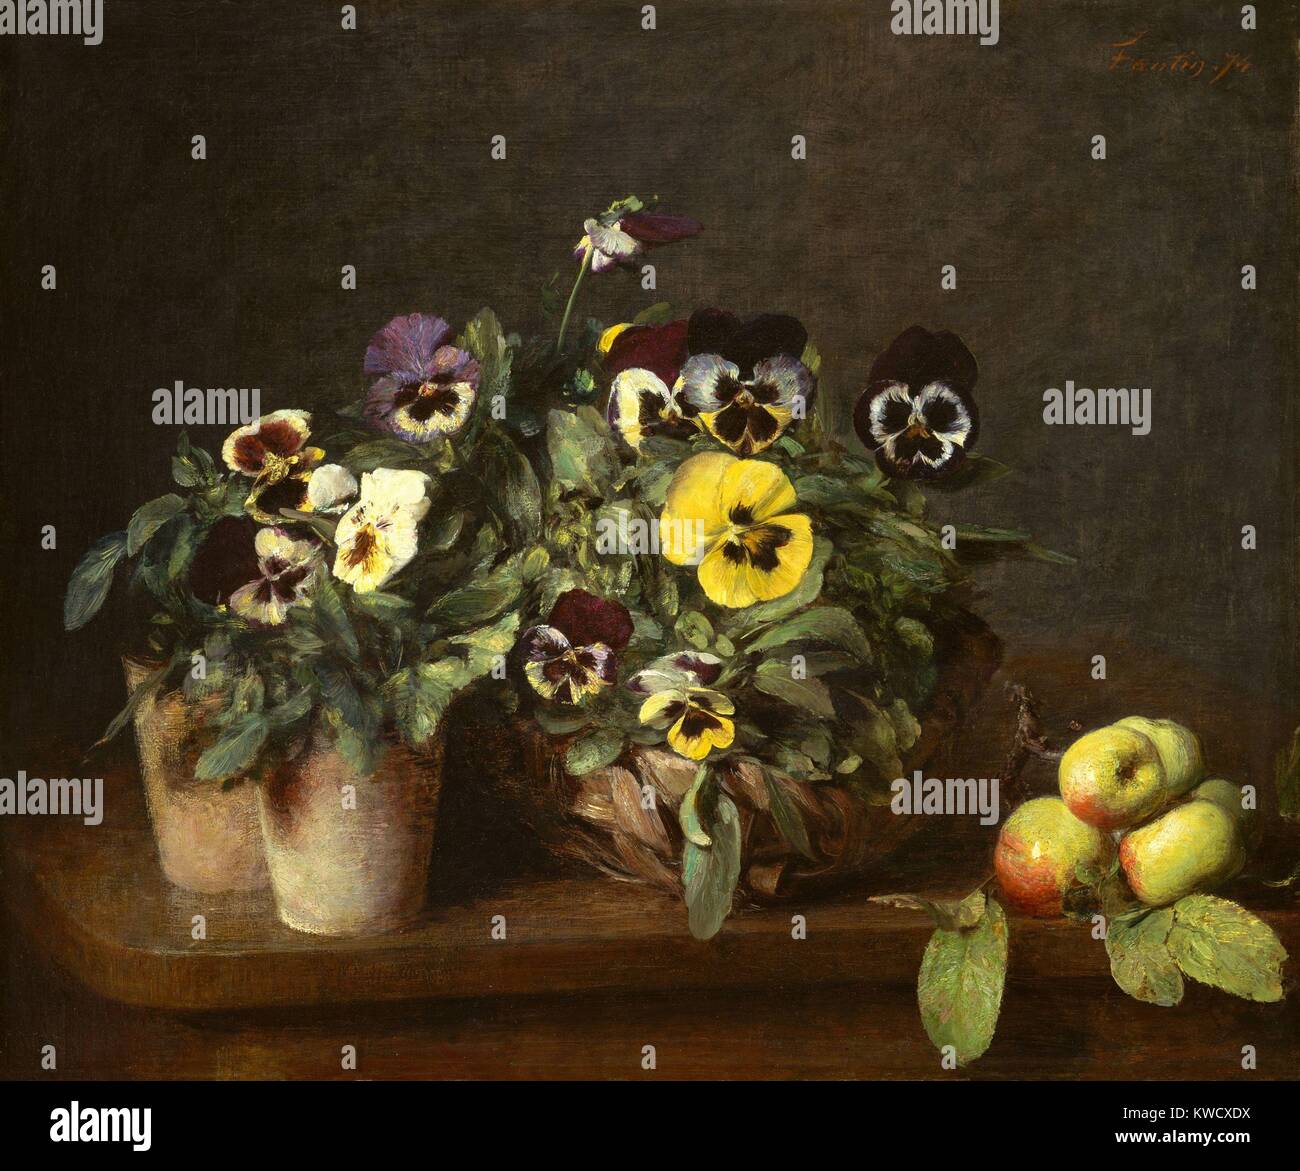 Still Life with pensées, par Henri Fantin-Latour, 1874, la peinture impressionniste français, huile sur toile. C'est l'un des trente et un tableaux que Fantin-Latour, produit en 1874 (BSLOC 2017 3 150) Banque D'Images